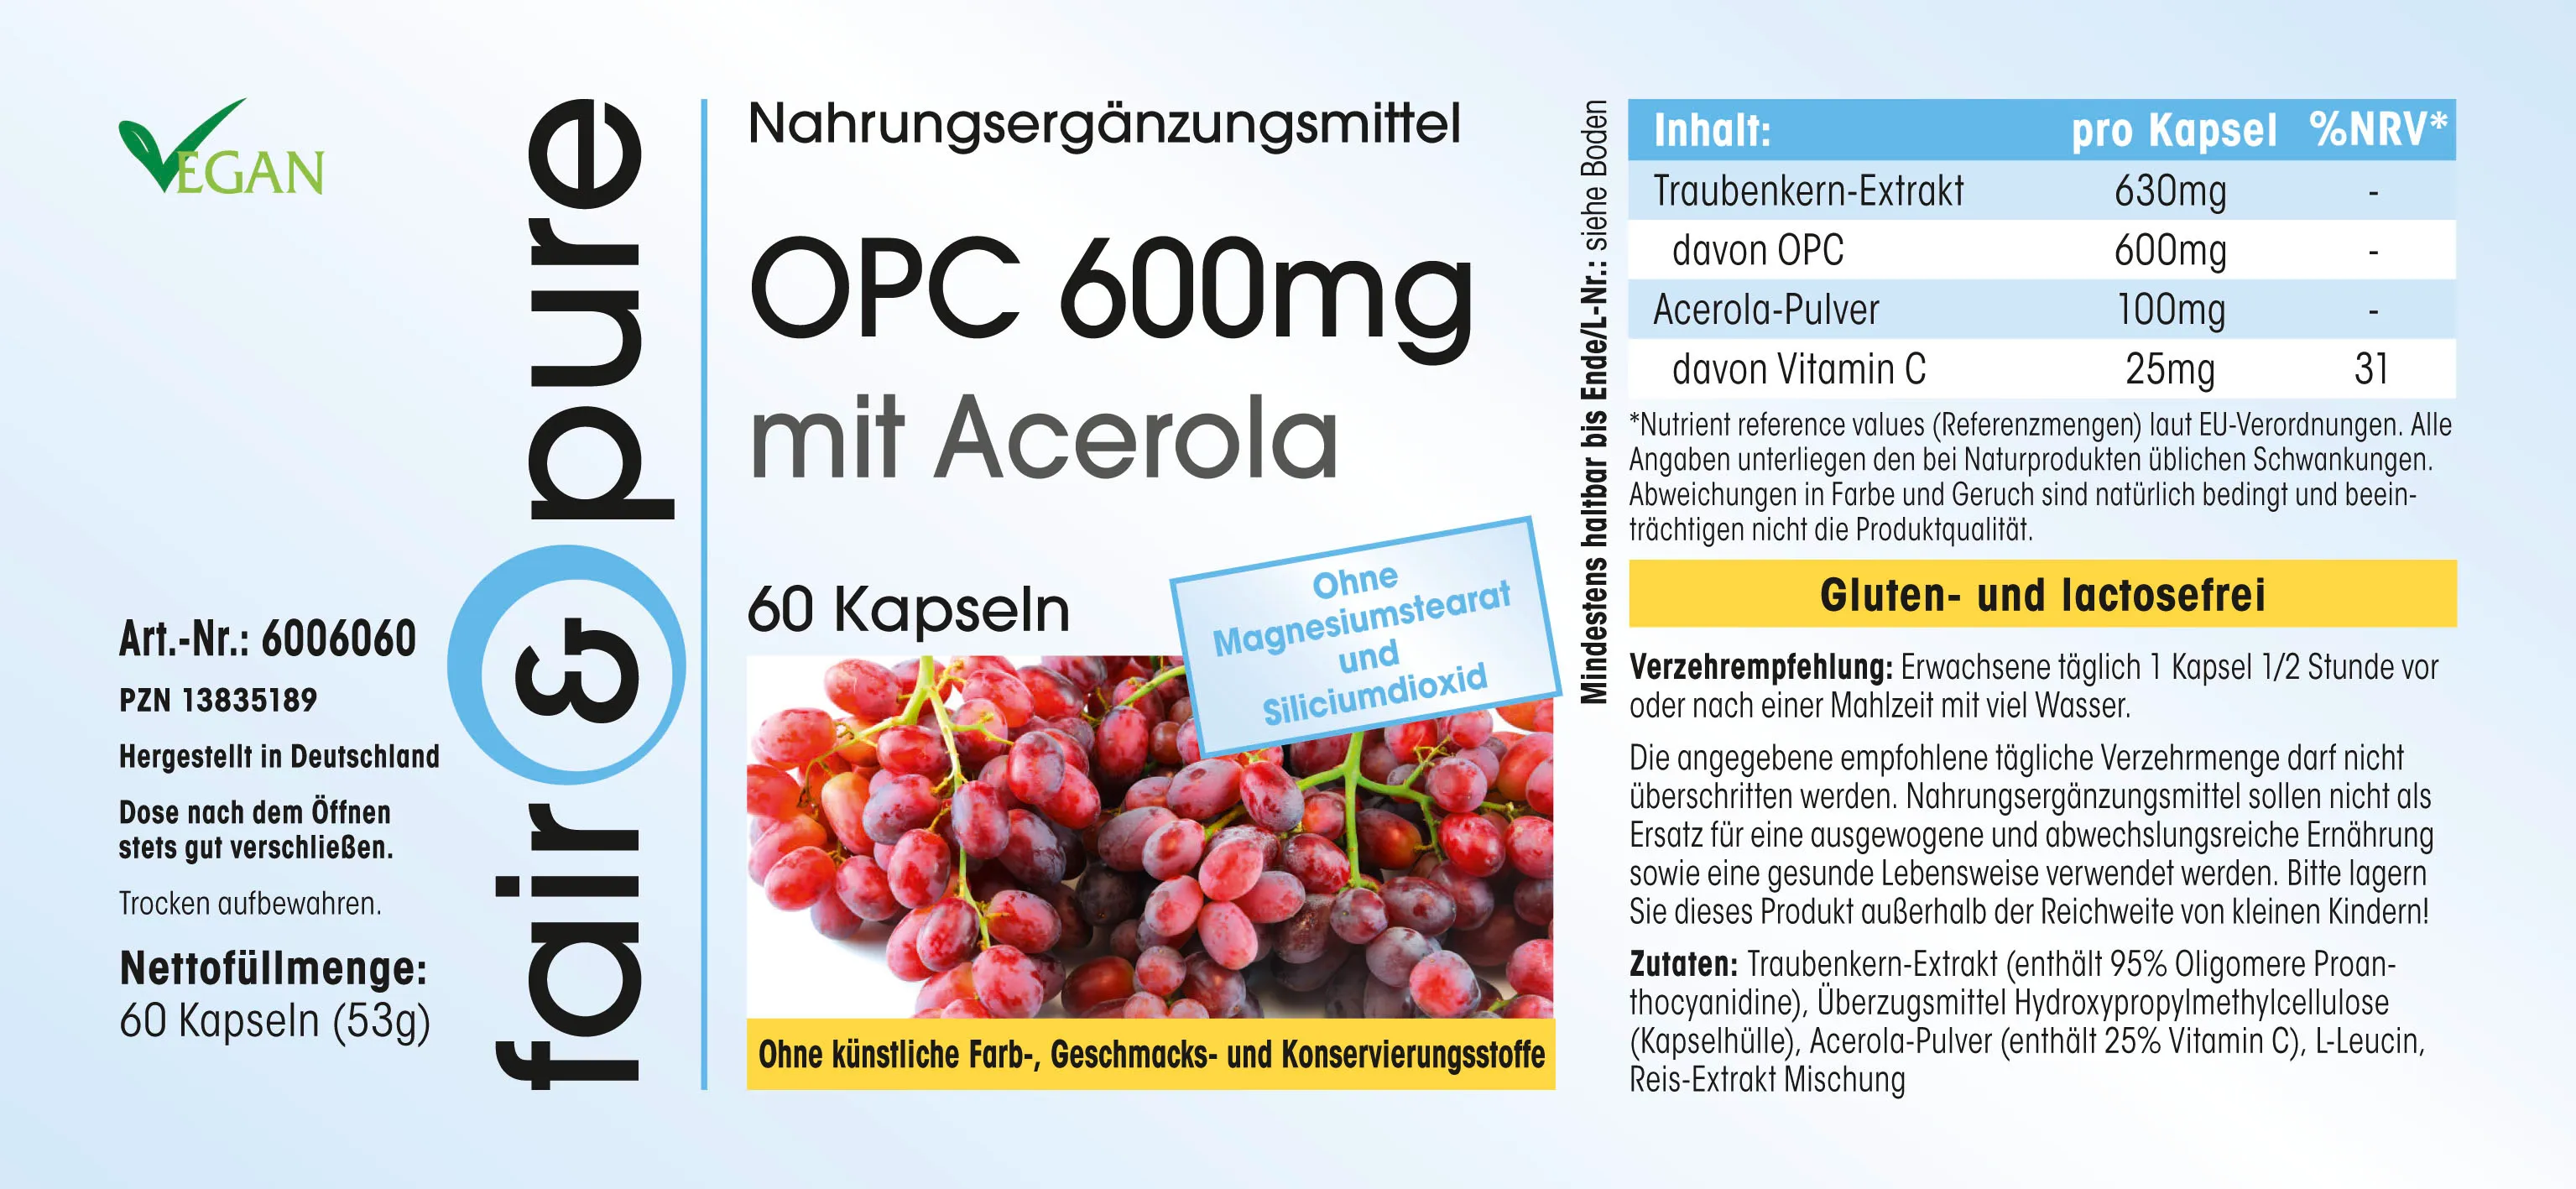 OPC 600mg + Acerola